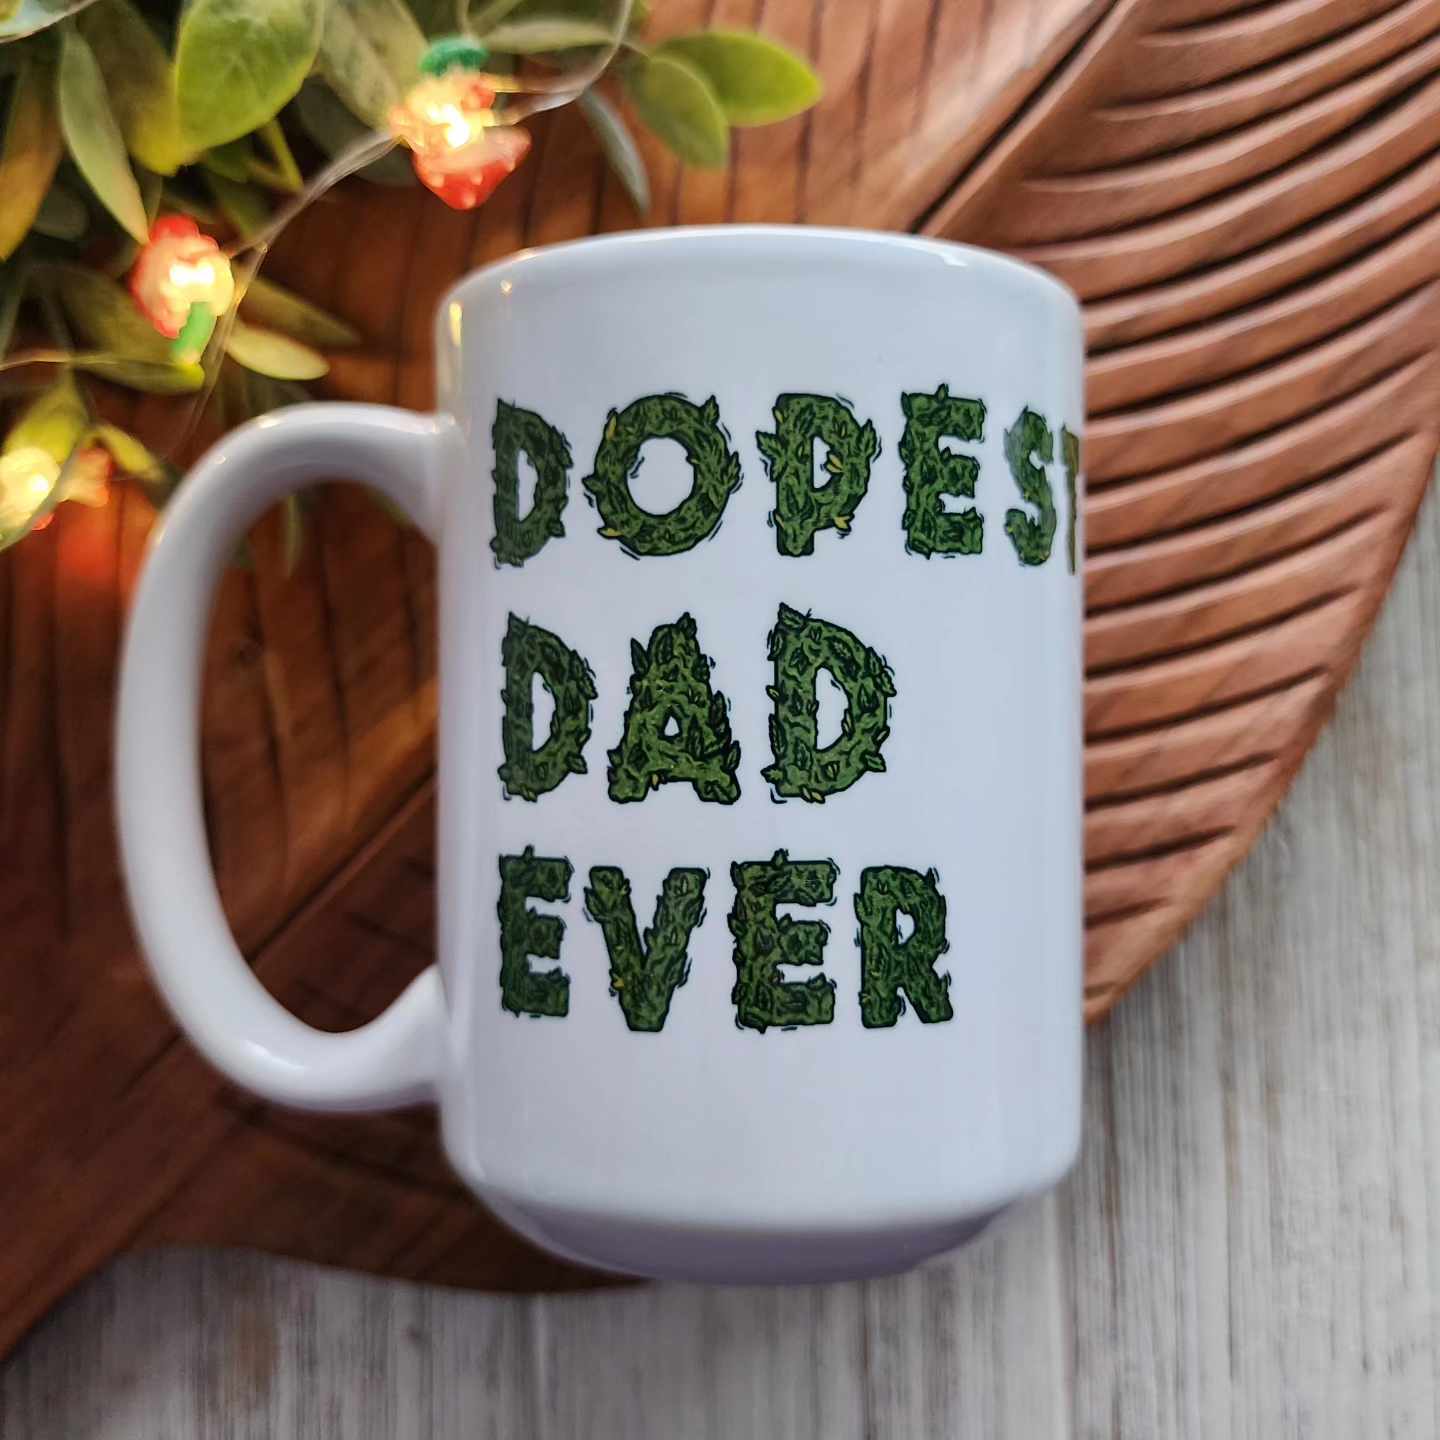 Dopest Dad Ever Mug